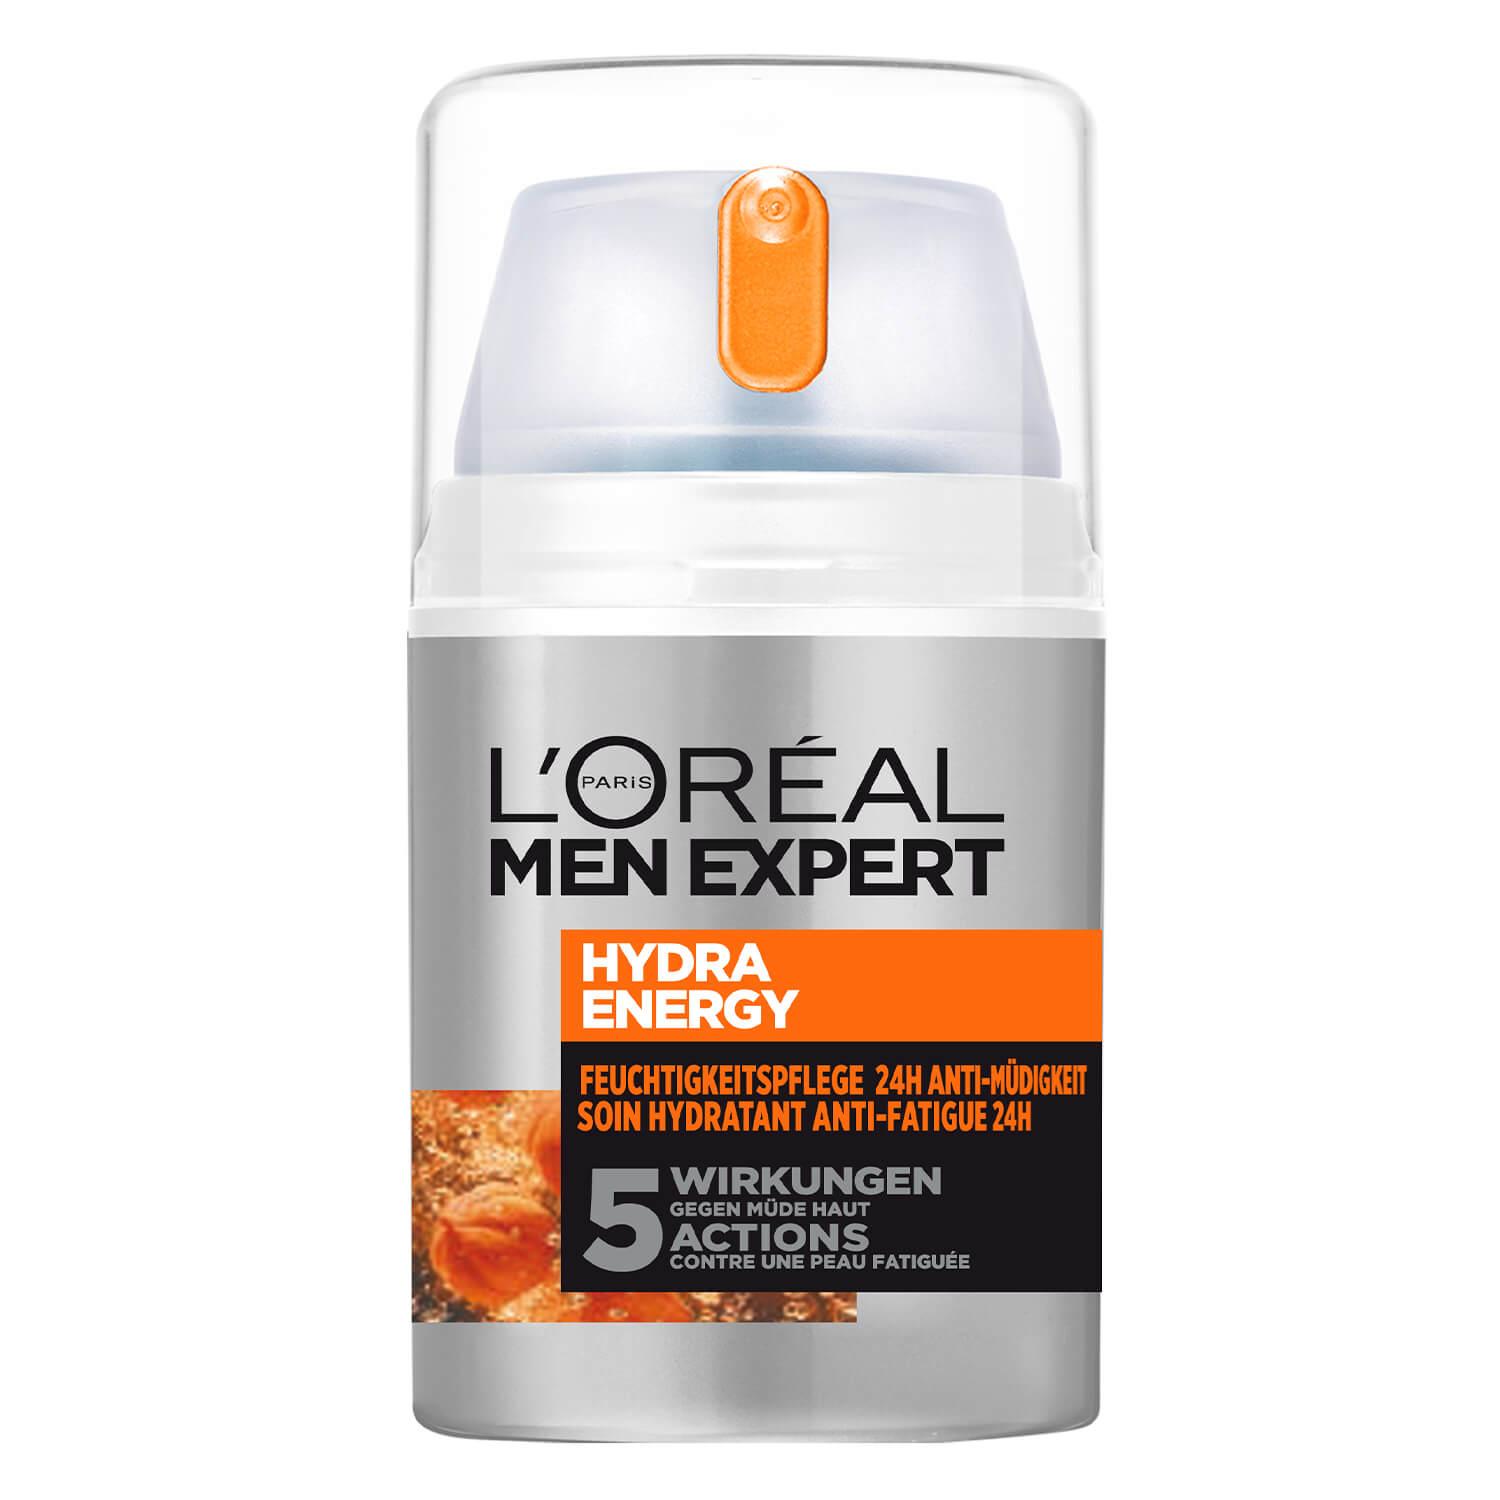 LOréal Men Expert - Hydra Energy Feuchtigkeitspflege 24H Anti-Müdigkeit